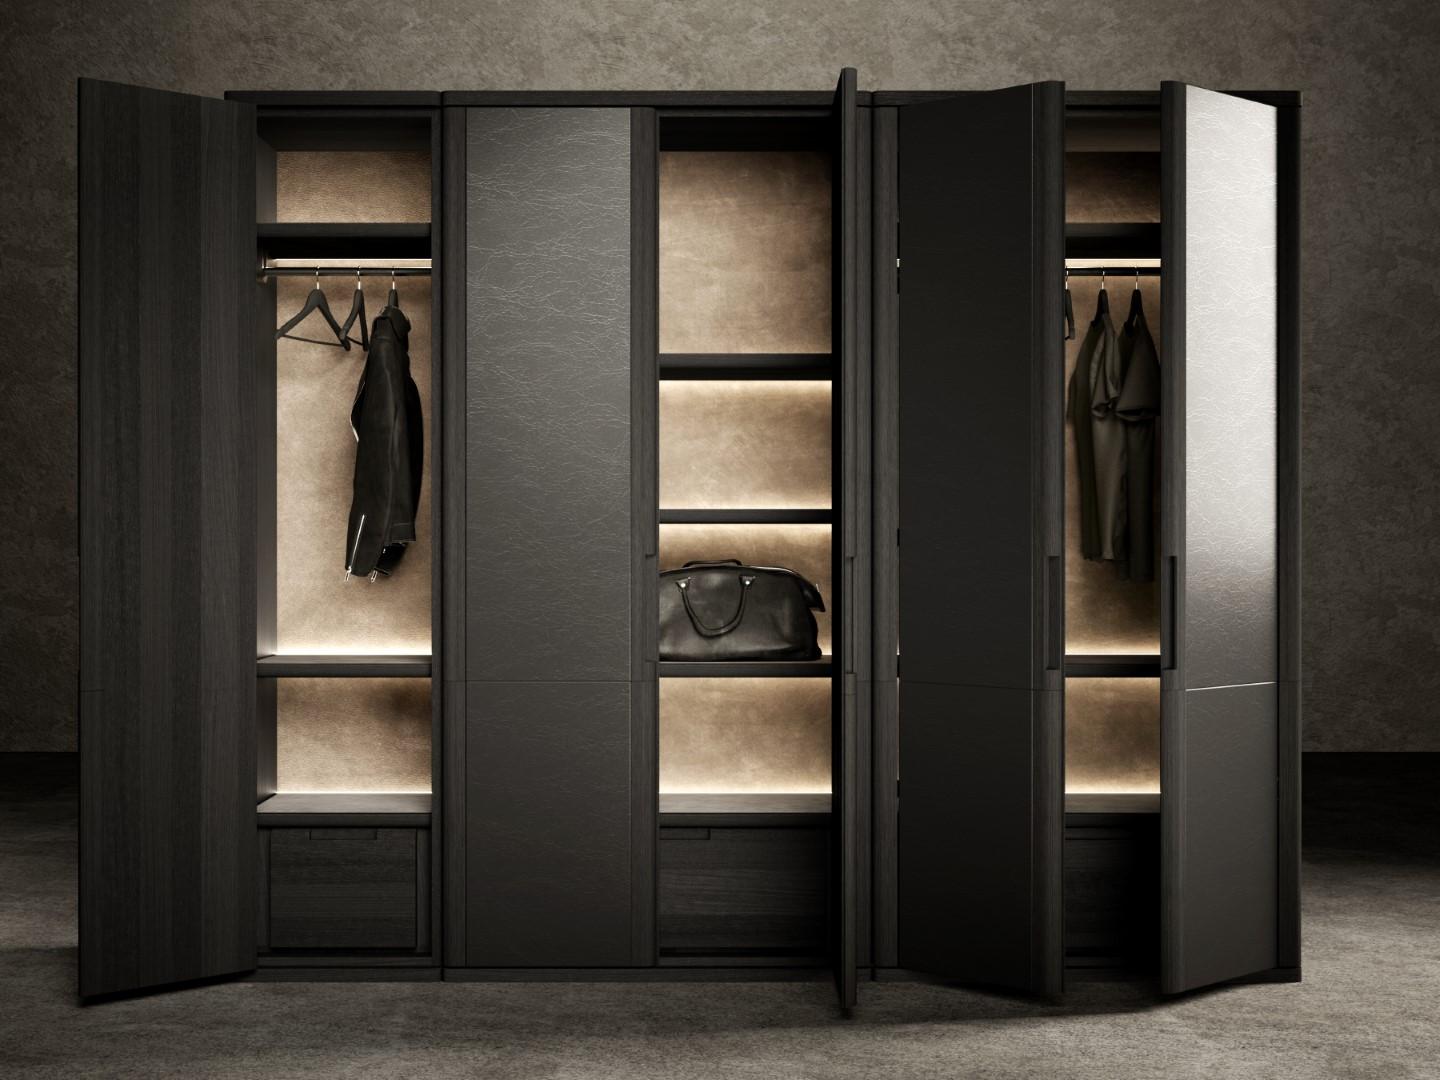 L'armoire Vittorio est un meuble de rangement modulable, disponible en deux versions, 60 cm et 120 cm de large, qui peuvent être placées côte à côte.
La structure en bois de frêne noir sablé est entièrement personnalisable, à commencer par les